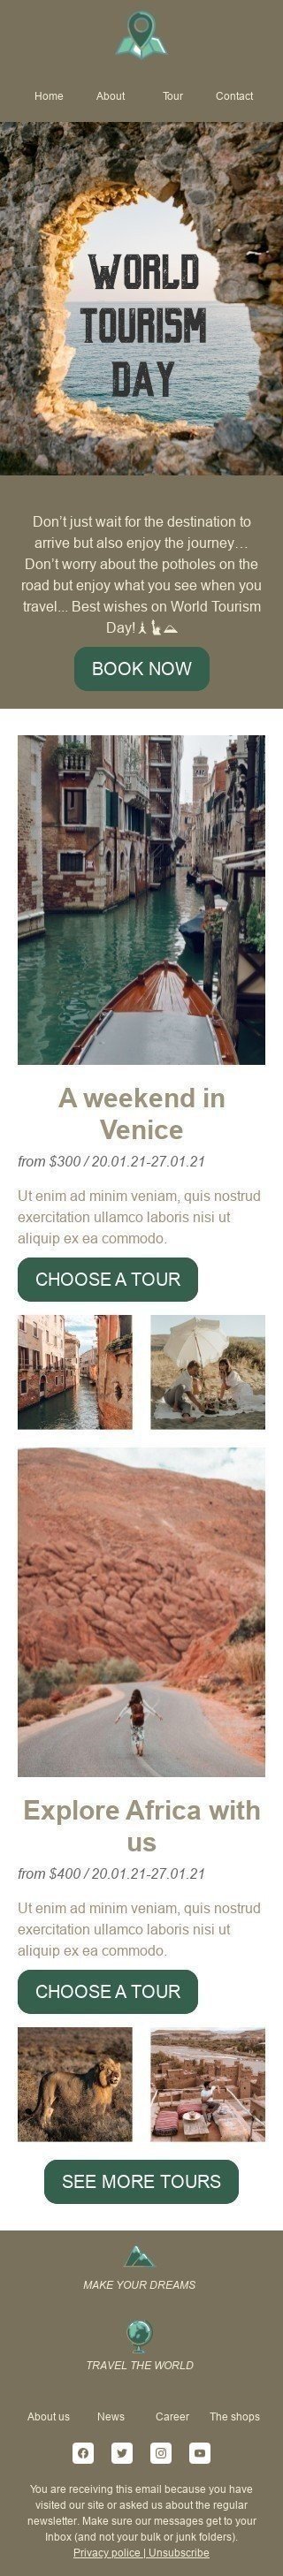 Welttourismustag E-Mail-Vorlage «Wochenende in Venedig» für Tourismus-Branche Ansicht auf Mobilgeräten